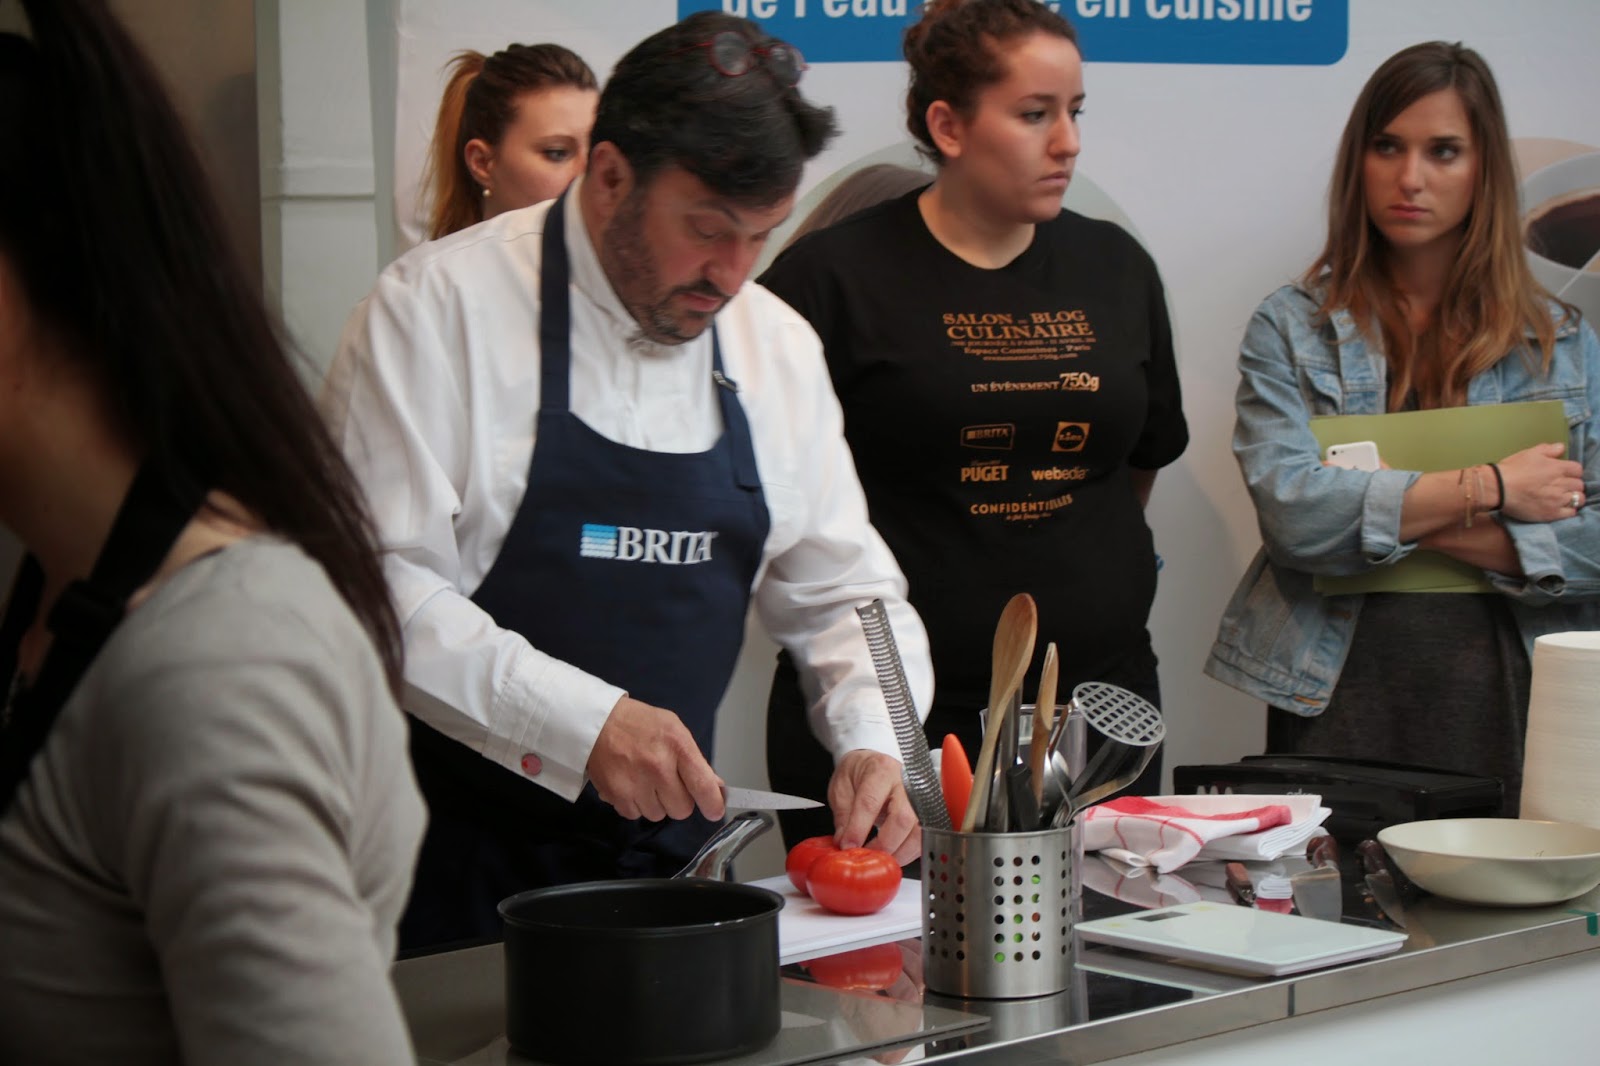 Salon du blog culinaire 2015 à Paris